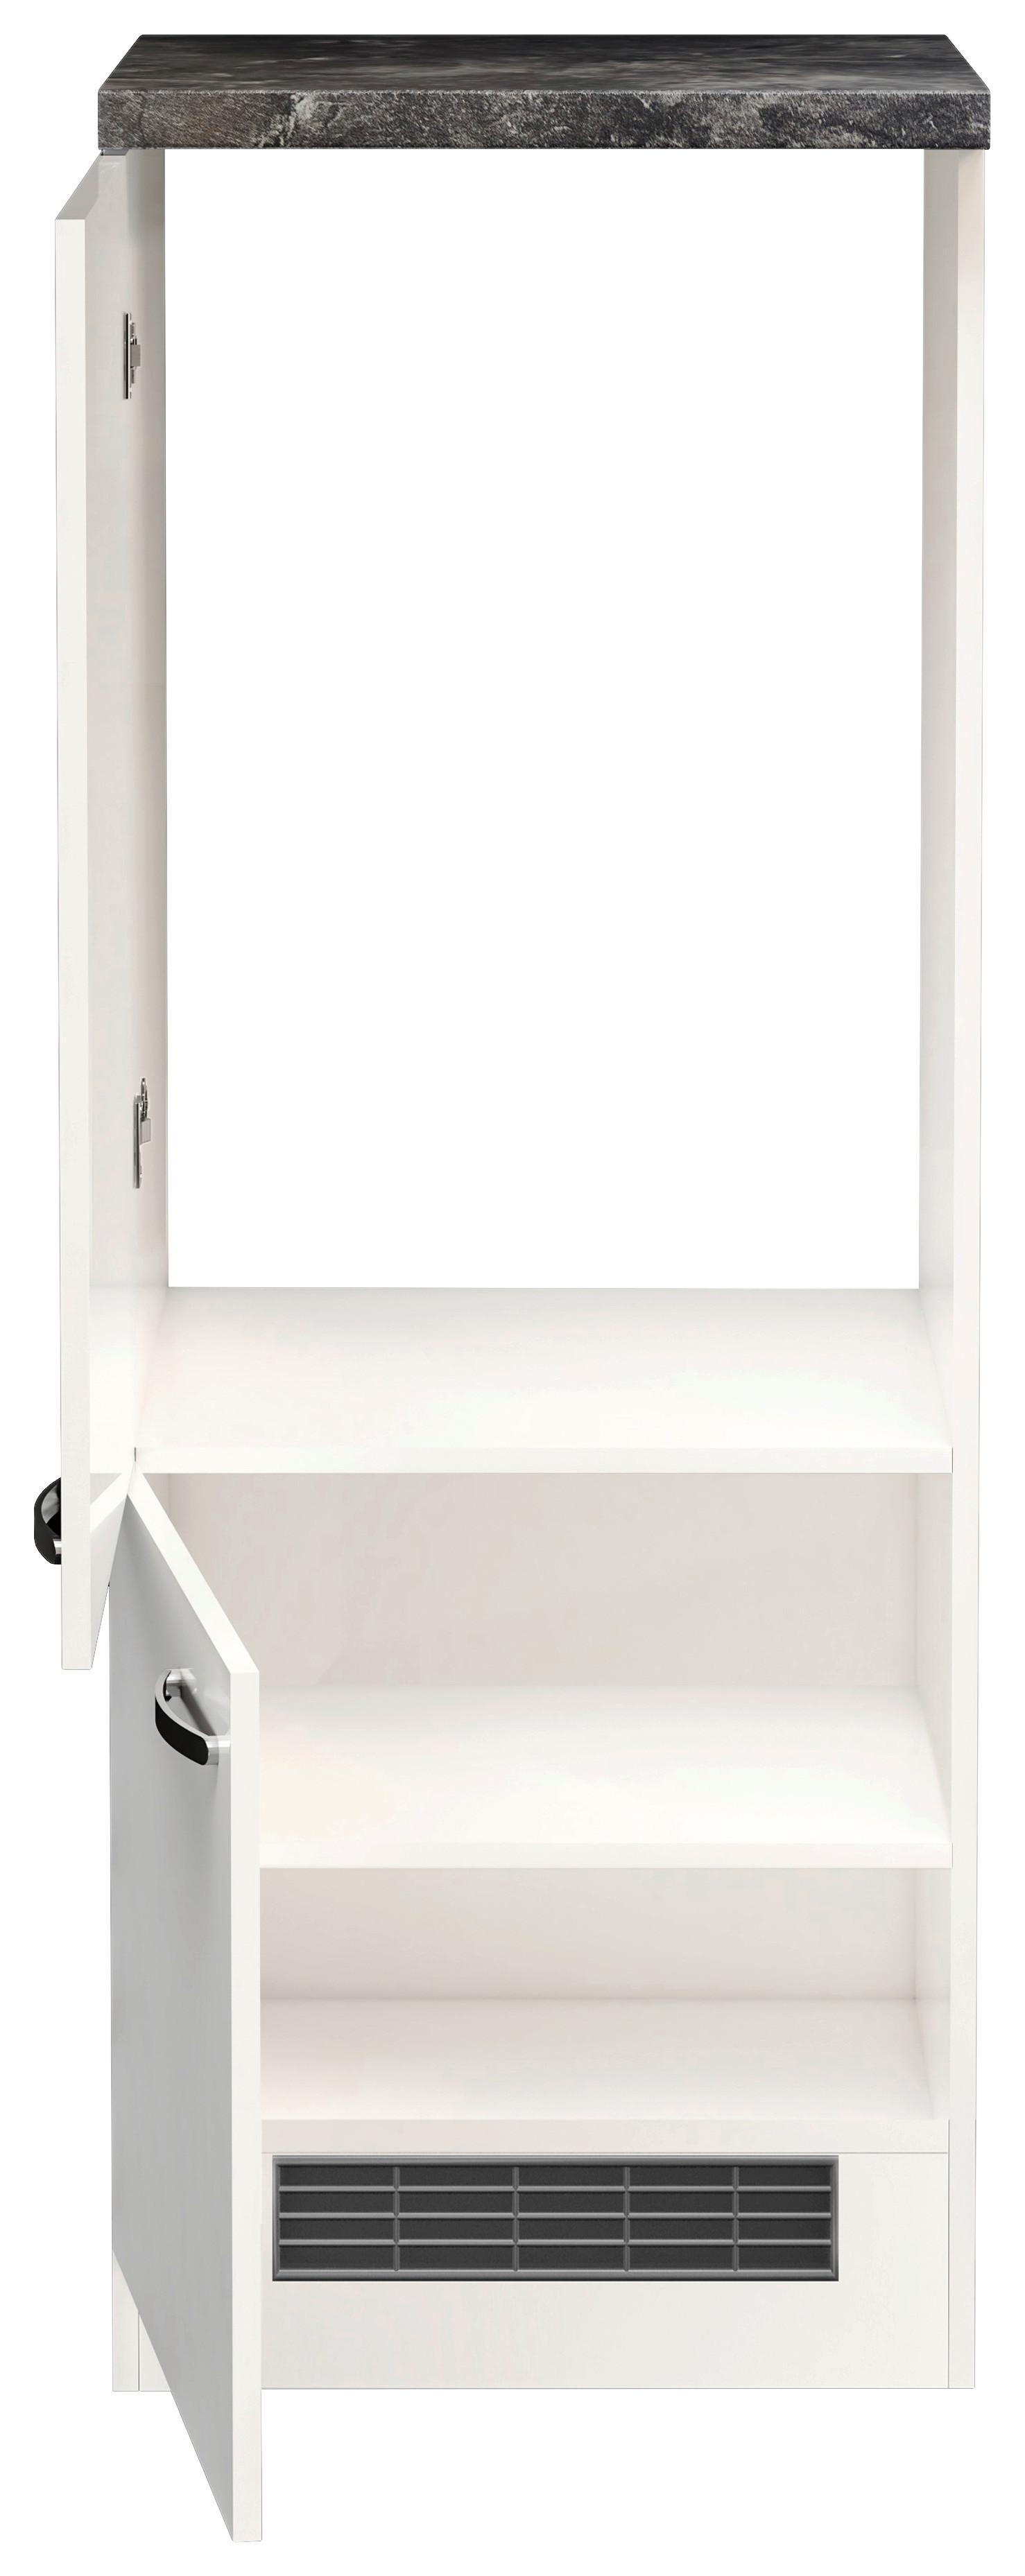 Skříňka Na Spotřebiče Alba  Dgit60 - bílá/barvy nerez oceli, Moderní, kov/kompozitní dřevo (60/162/57cm)